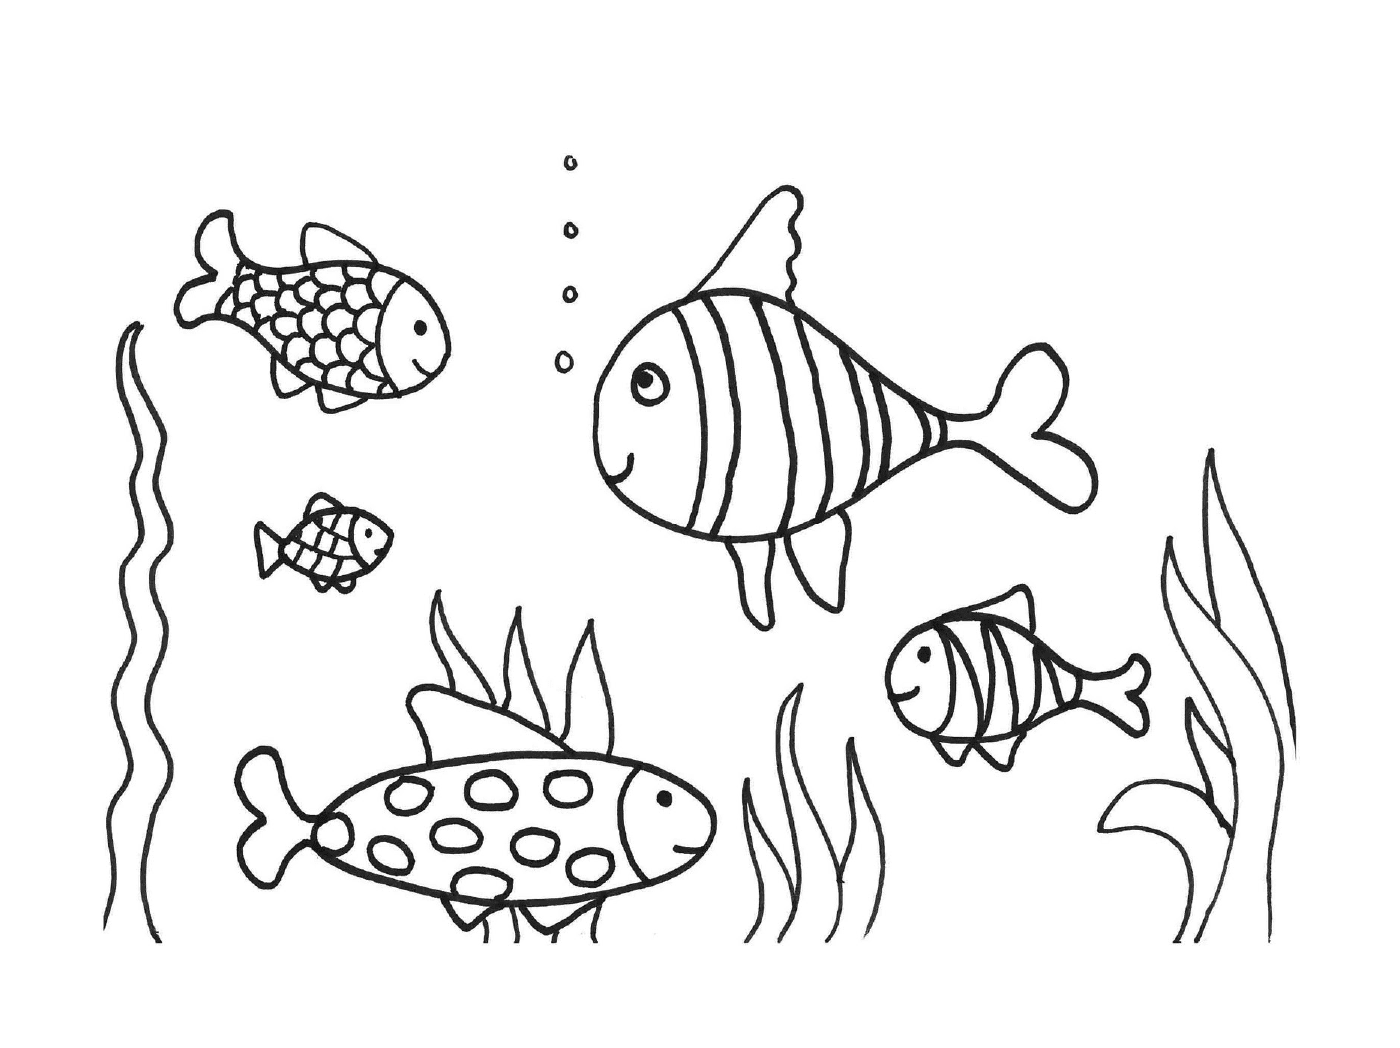   Beaucoup de poissons dans l'eau 